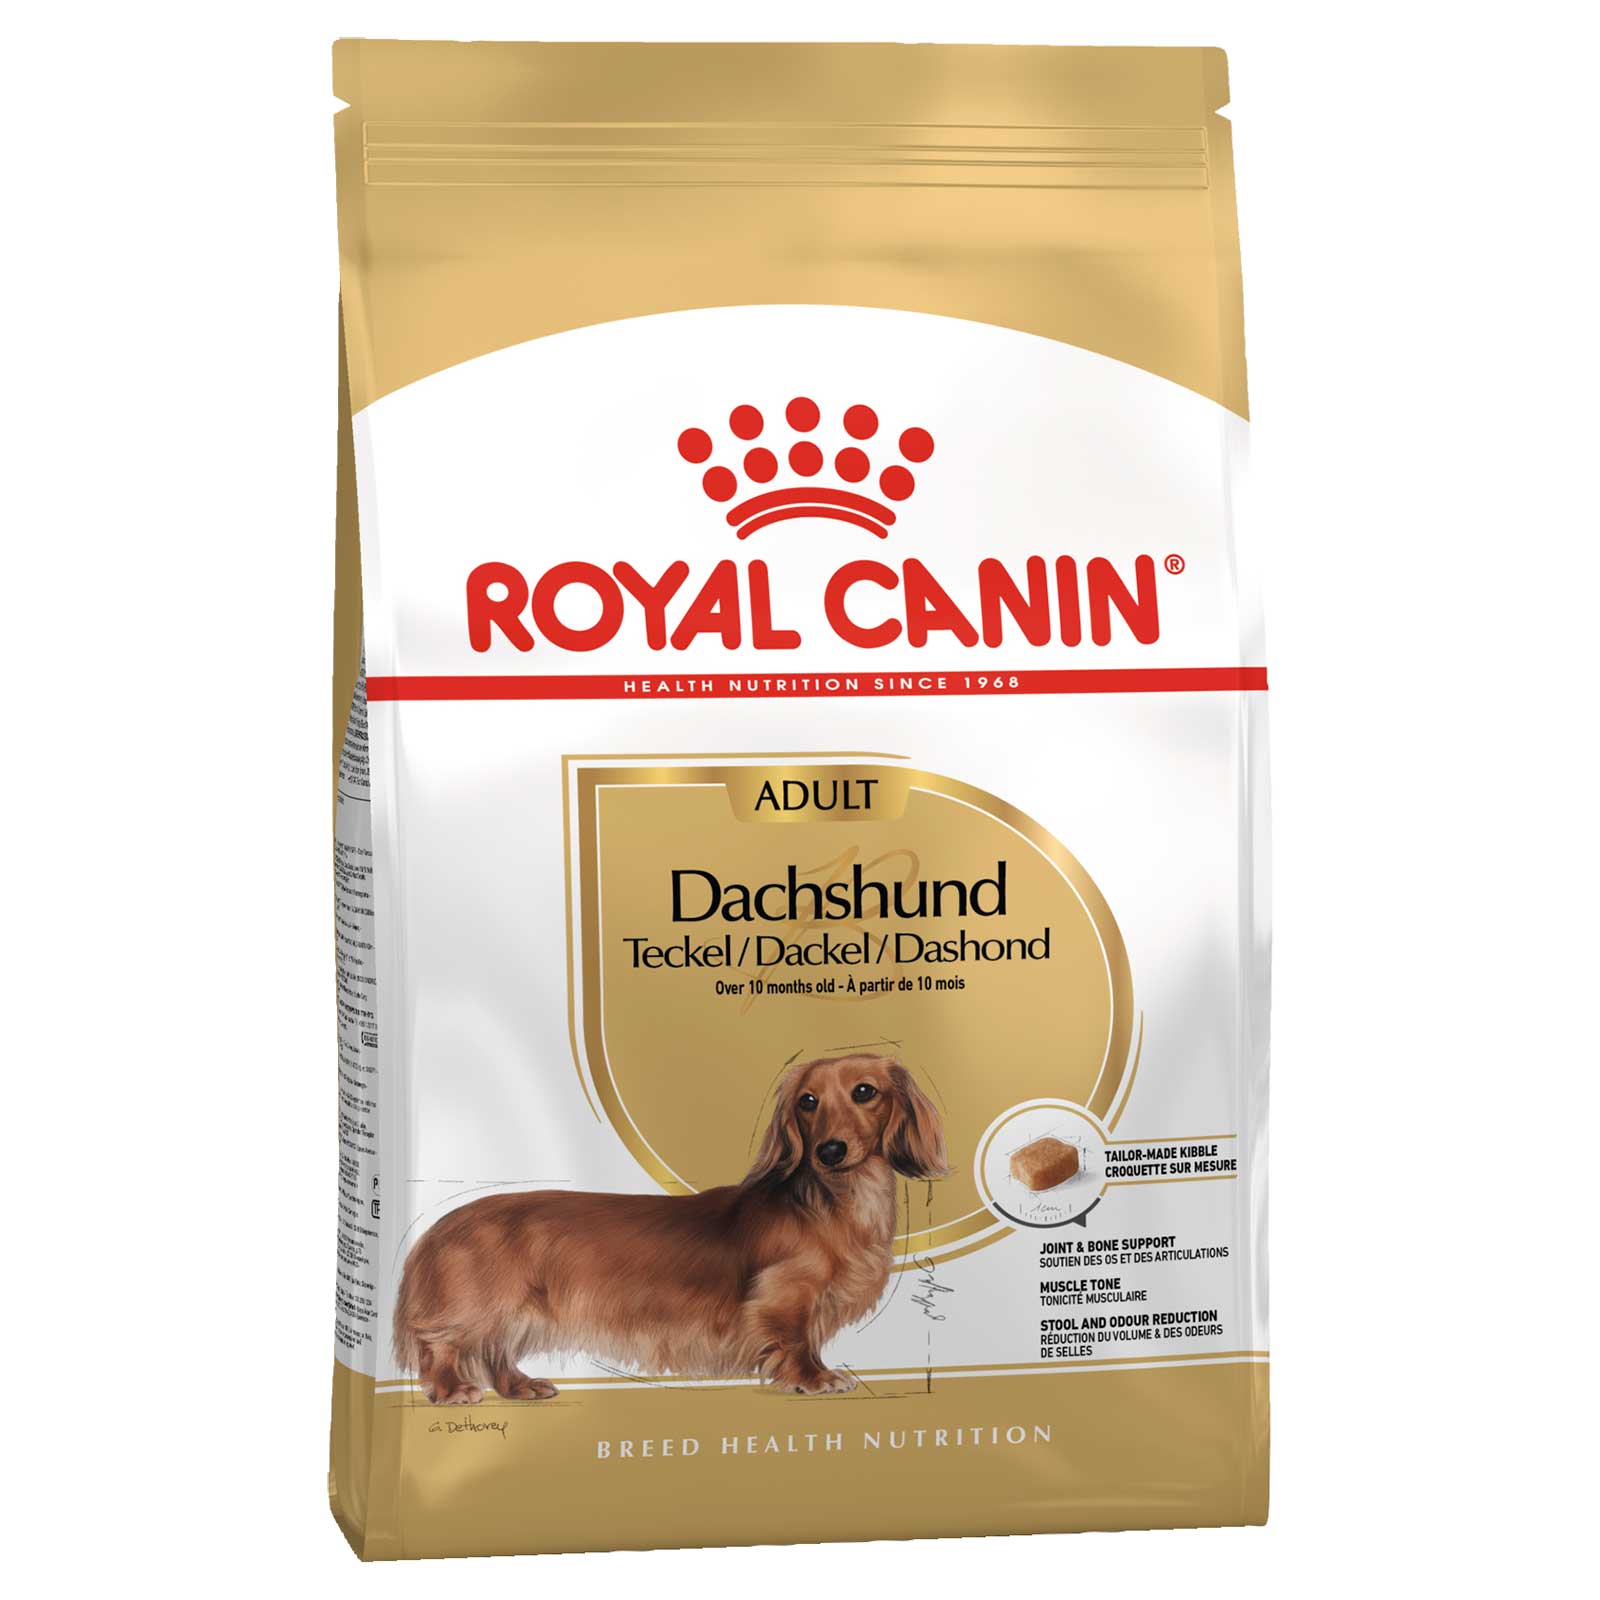 Royal Canin Dog Food Adult Dachshund